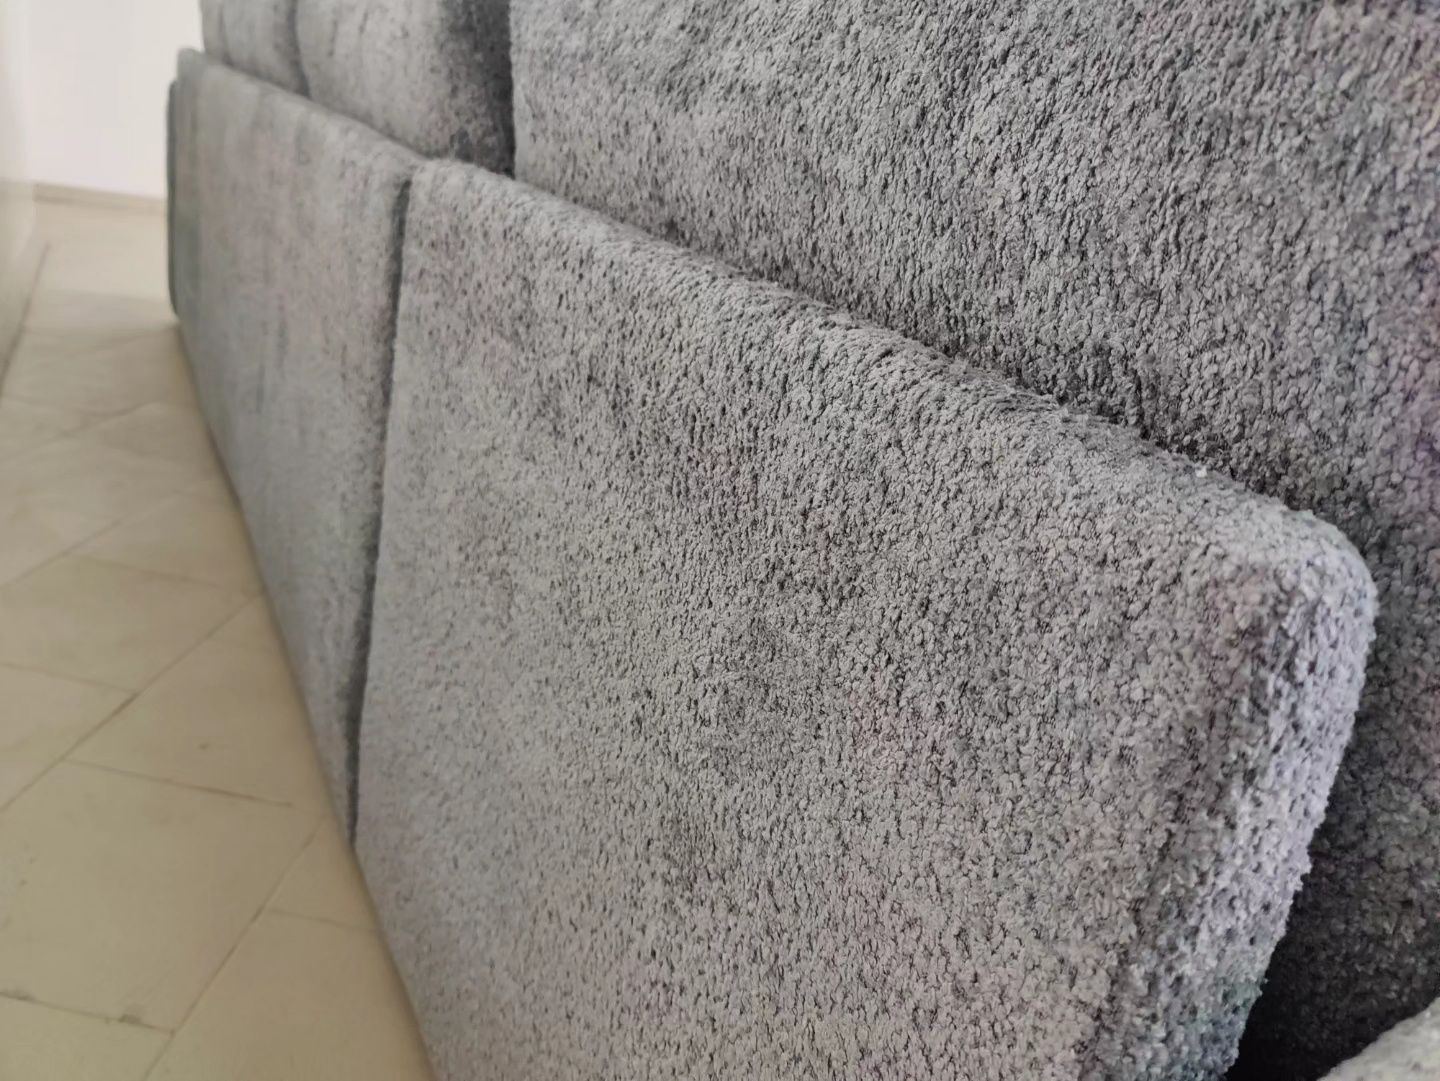 Новий розкладний П-подібний диван. М'які меблі. Розкладний диван